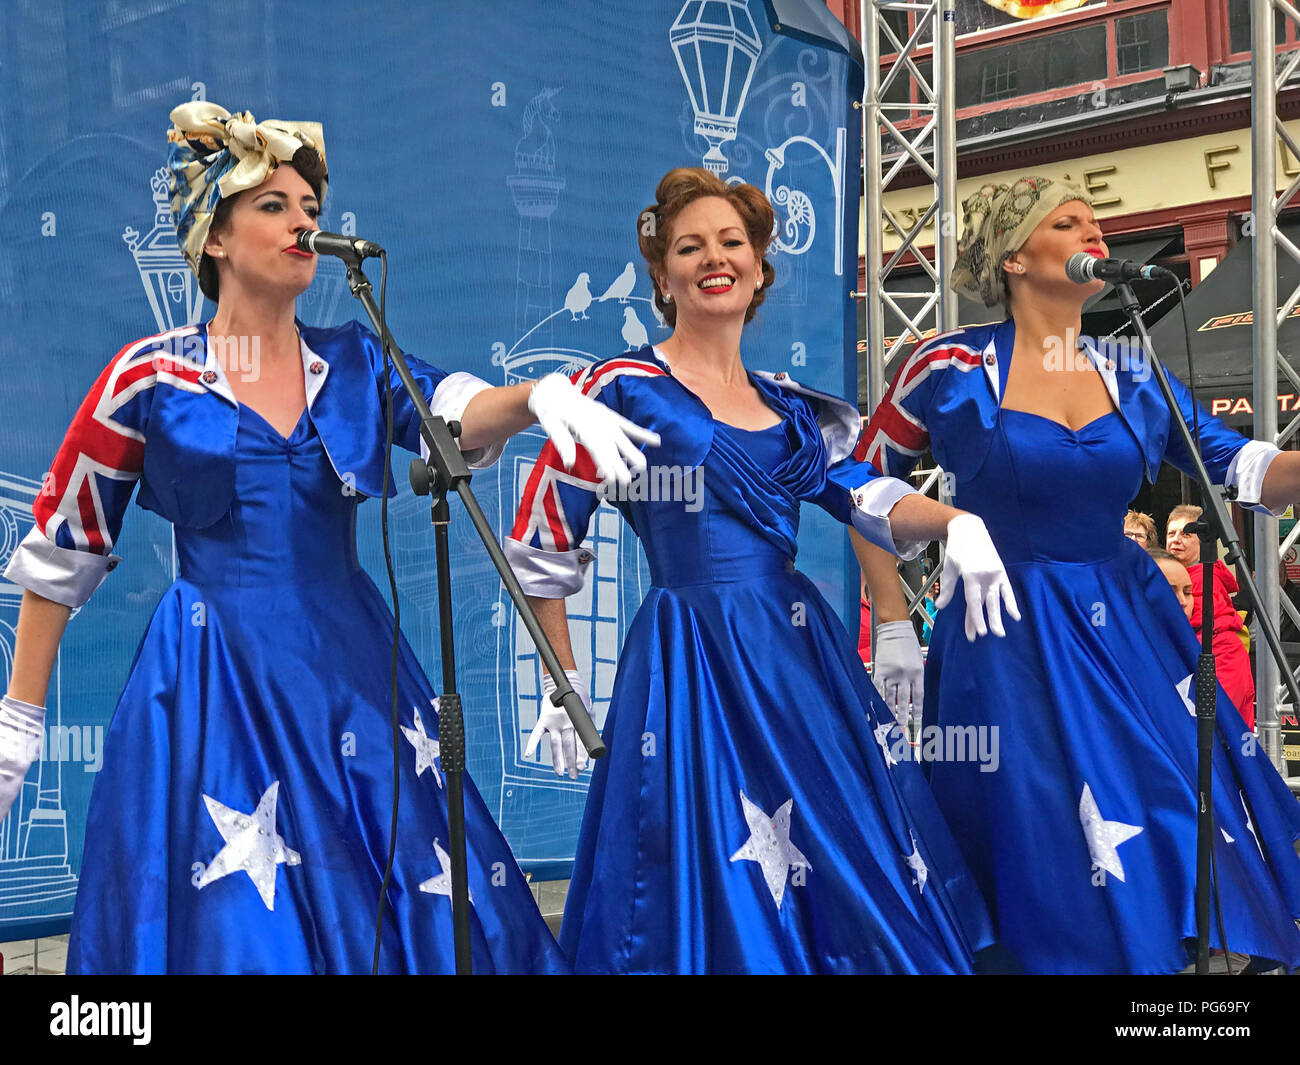 Les filles d'Oz - Fringe sur le Royal Mile, High St, Édimbourg, Écosse, Royaume-Uni Banque D'Images